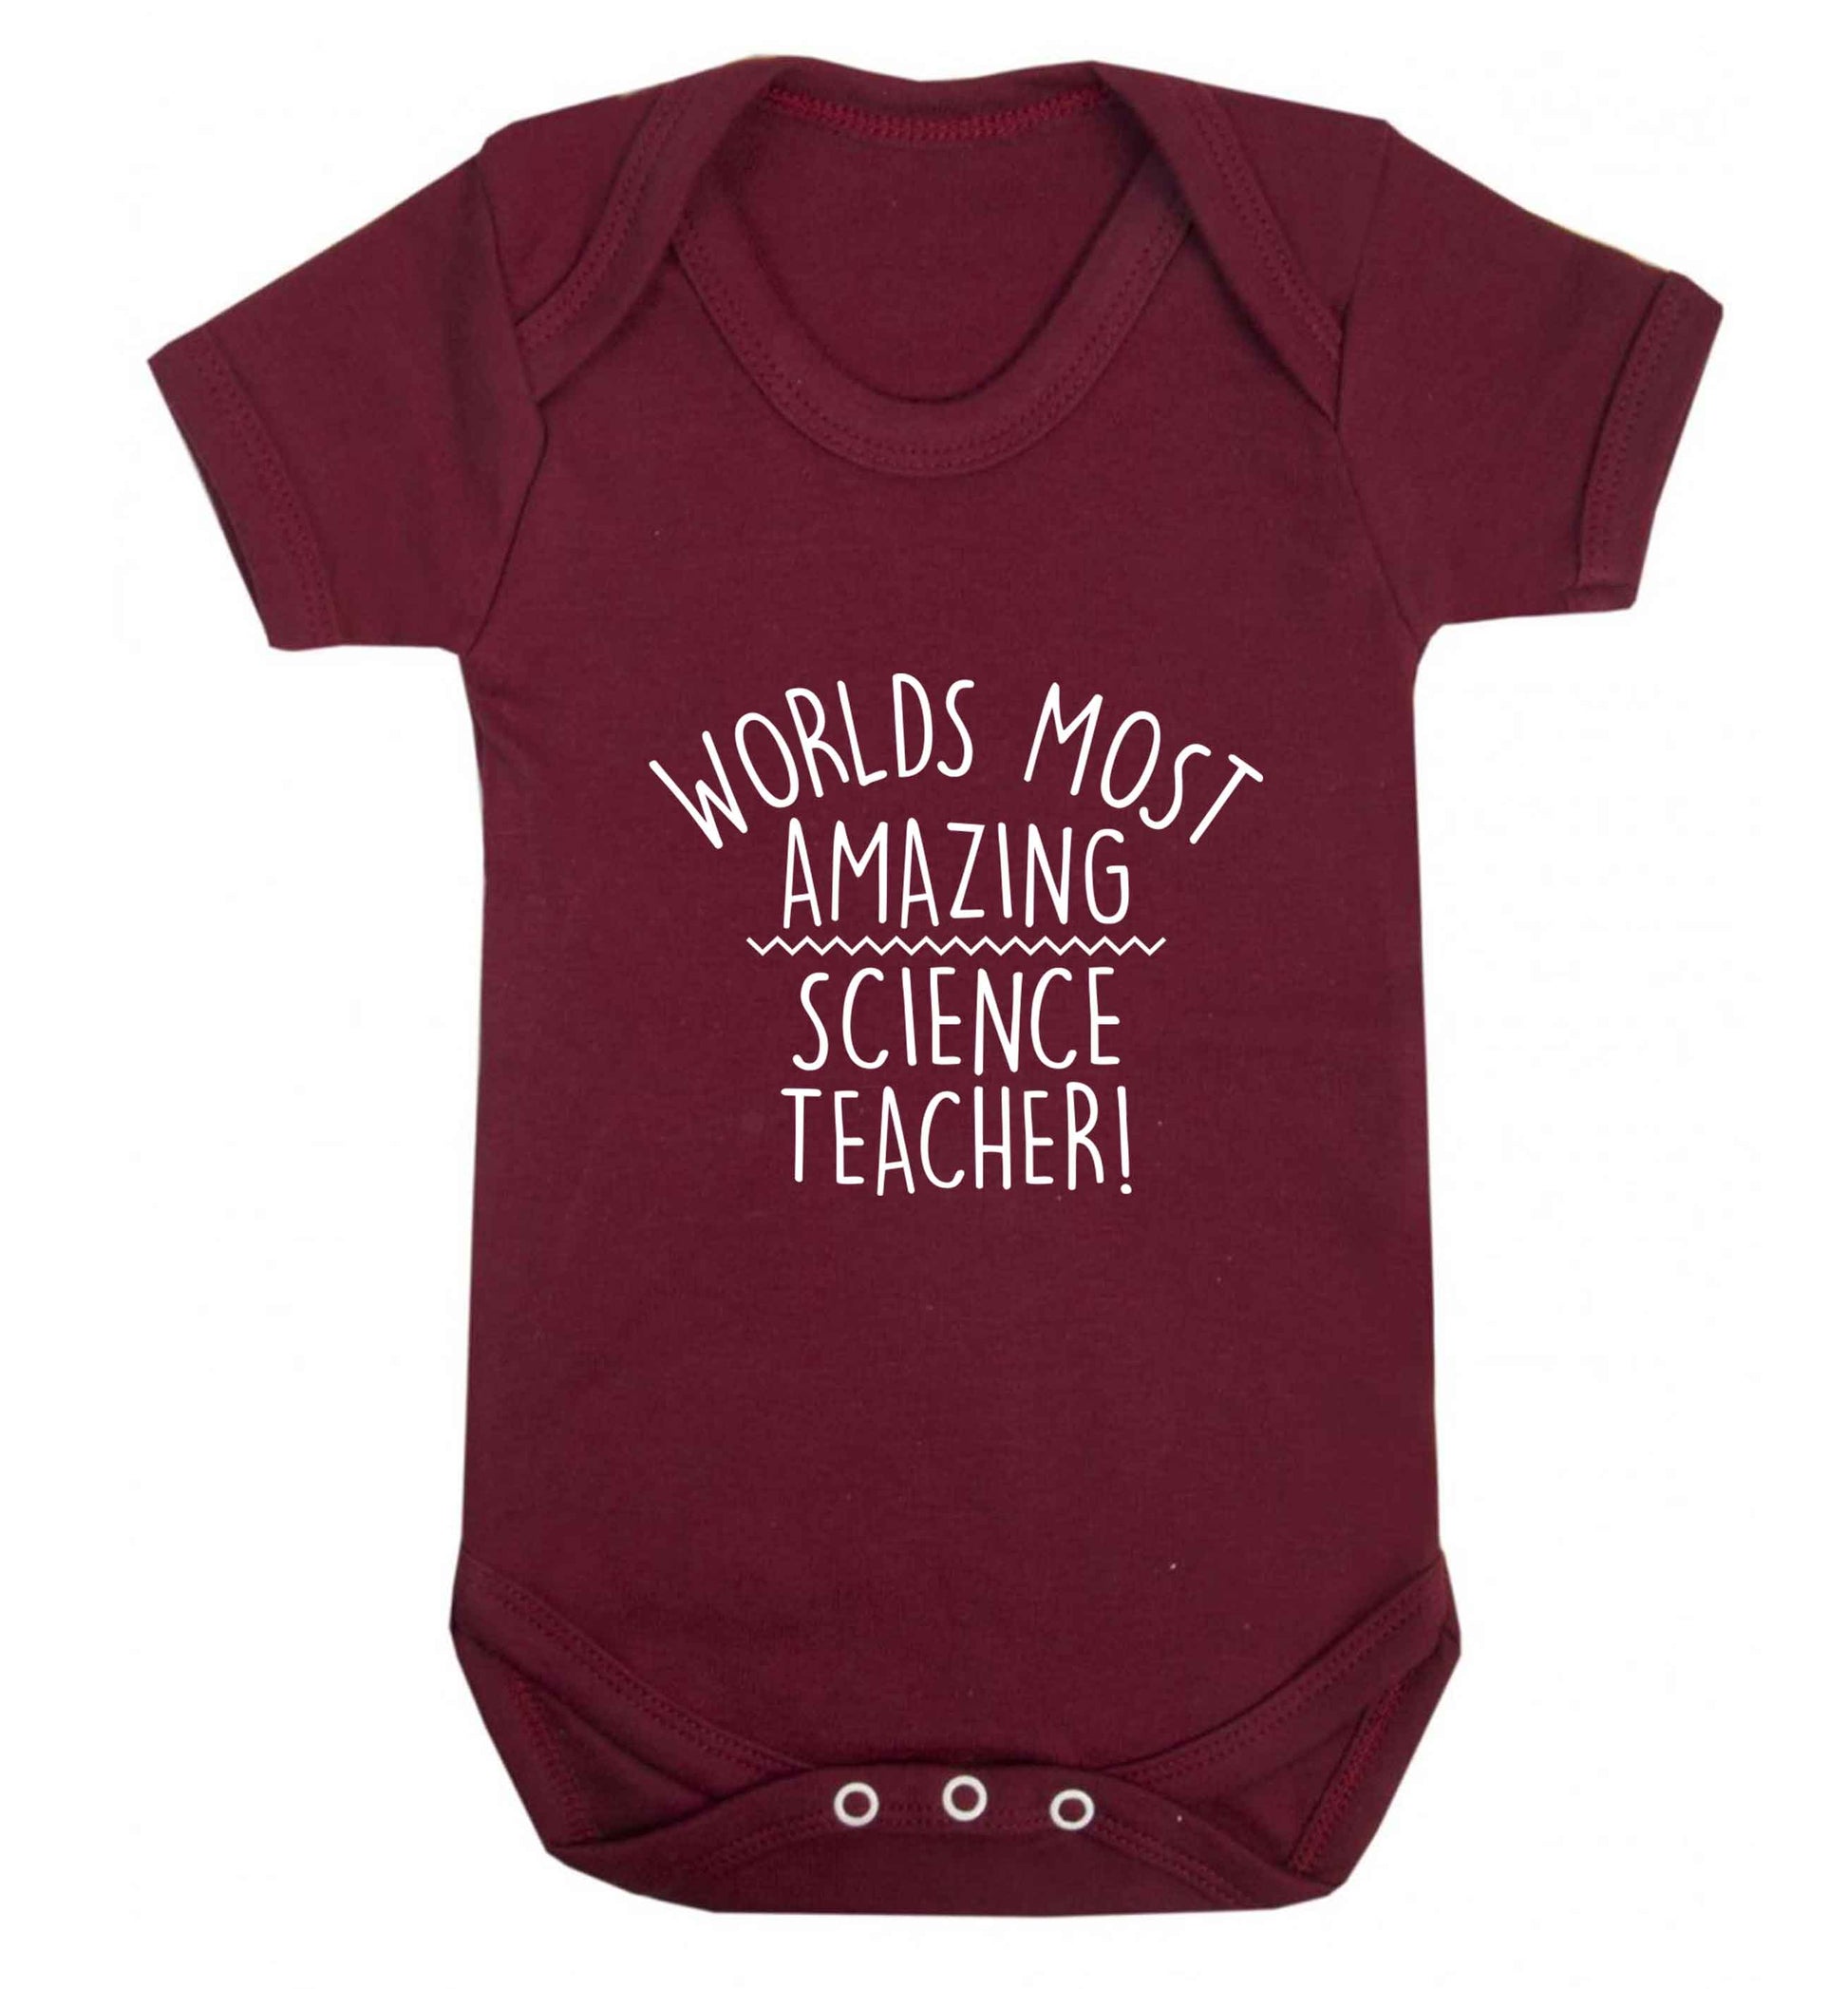 Worlds most amazing science teacher baby vest maroon 18-24 months